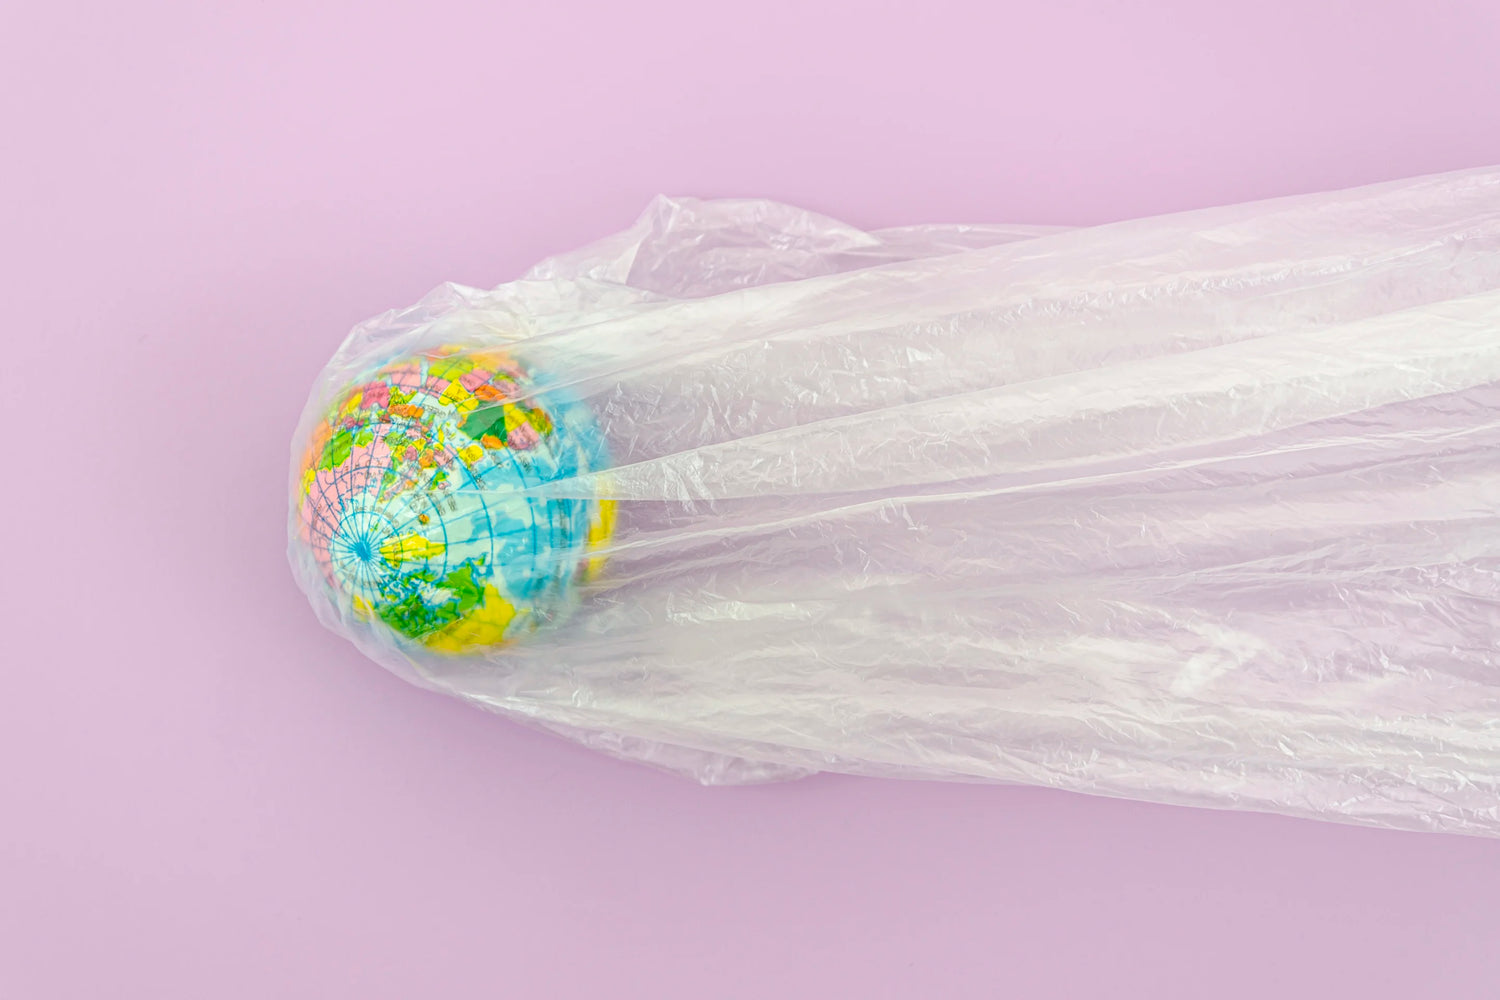 La photo montre un globe terrestre recouvert d'un sac en plastique transparent. Le globe est centré et le sac tombe en plis verticaux jusqu'au bas de l'image. Le fond est de couleur lilas.